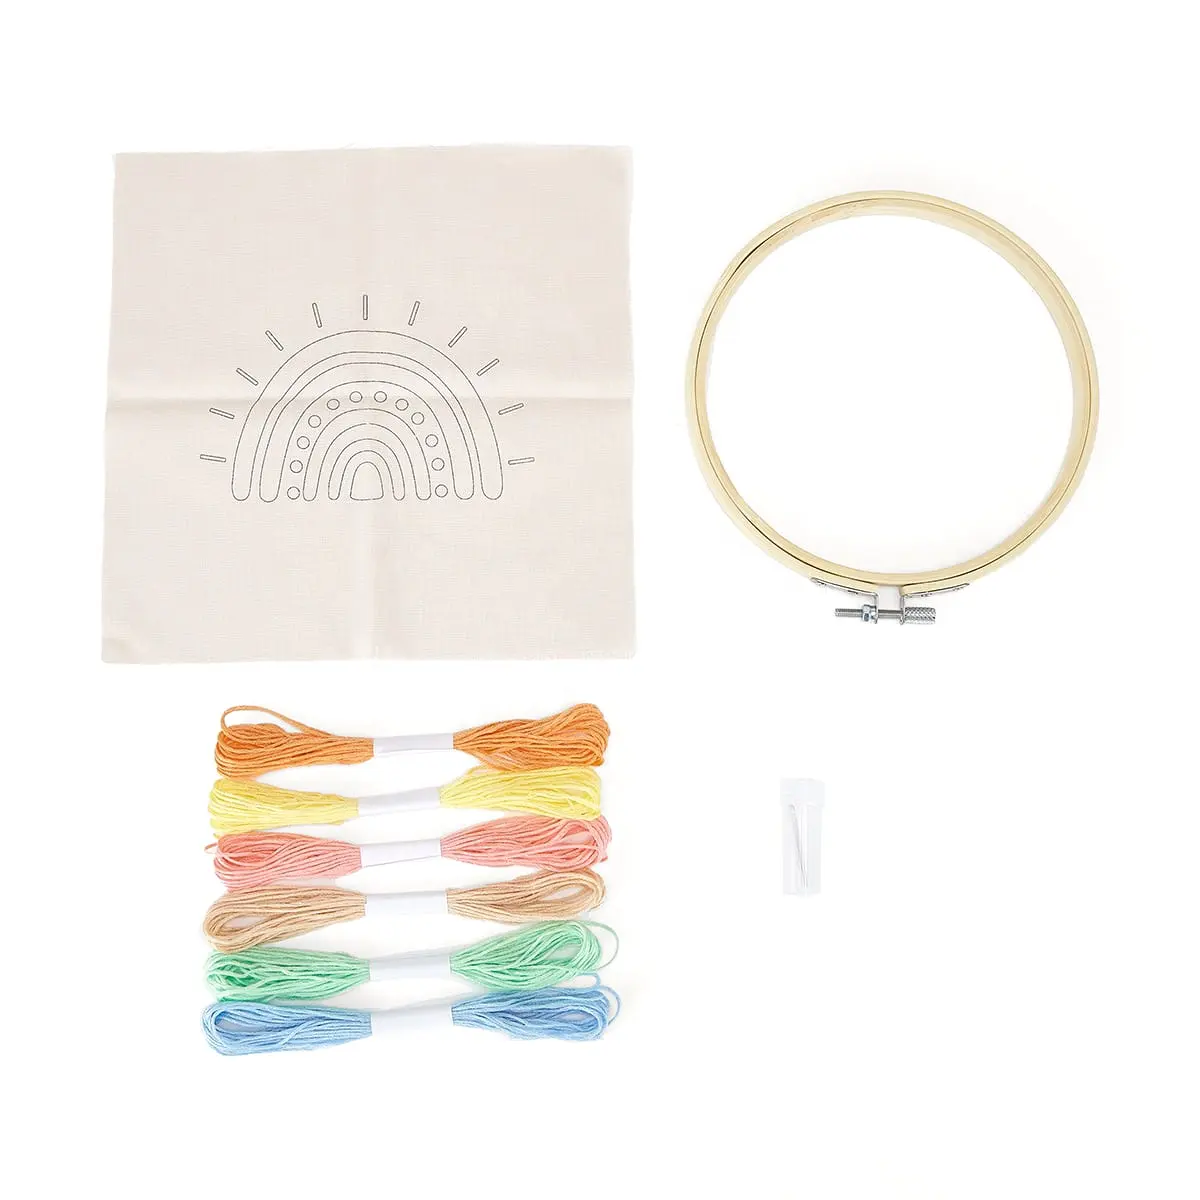 Kits de carimbo de arco-íris para bordado, artesanato e costura, faça você mesmo, kits coloridos com bordado